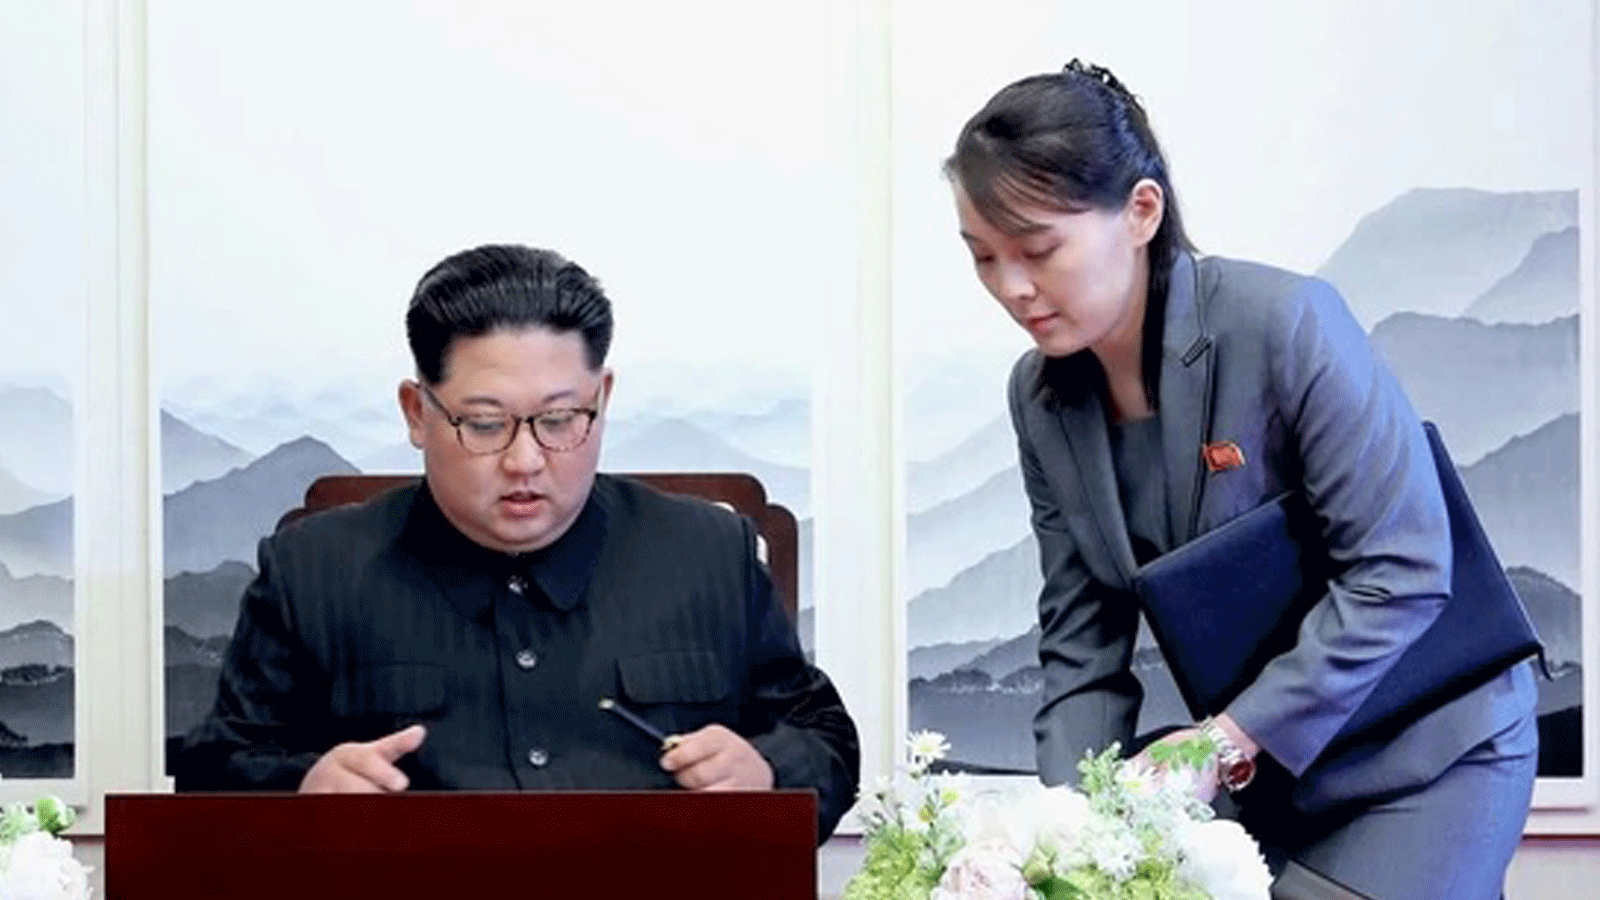 زعيم كوريا الشمالية كيم جونغ أون (يسار)يوقع على دفتر الزوار بجوار شقيقته كيم يو جونغ (يمين) خلال القمة بين الكوريتين في مبنى بيت السلام على جانب كوريا الجنوبية قرية الهدنة بانمونجوم. في 27 نيسان/أبريل 2018 